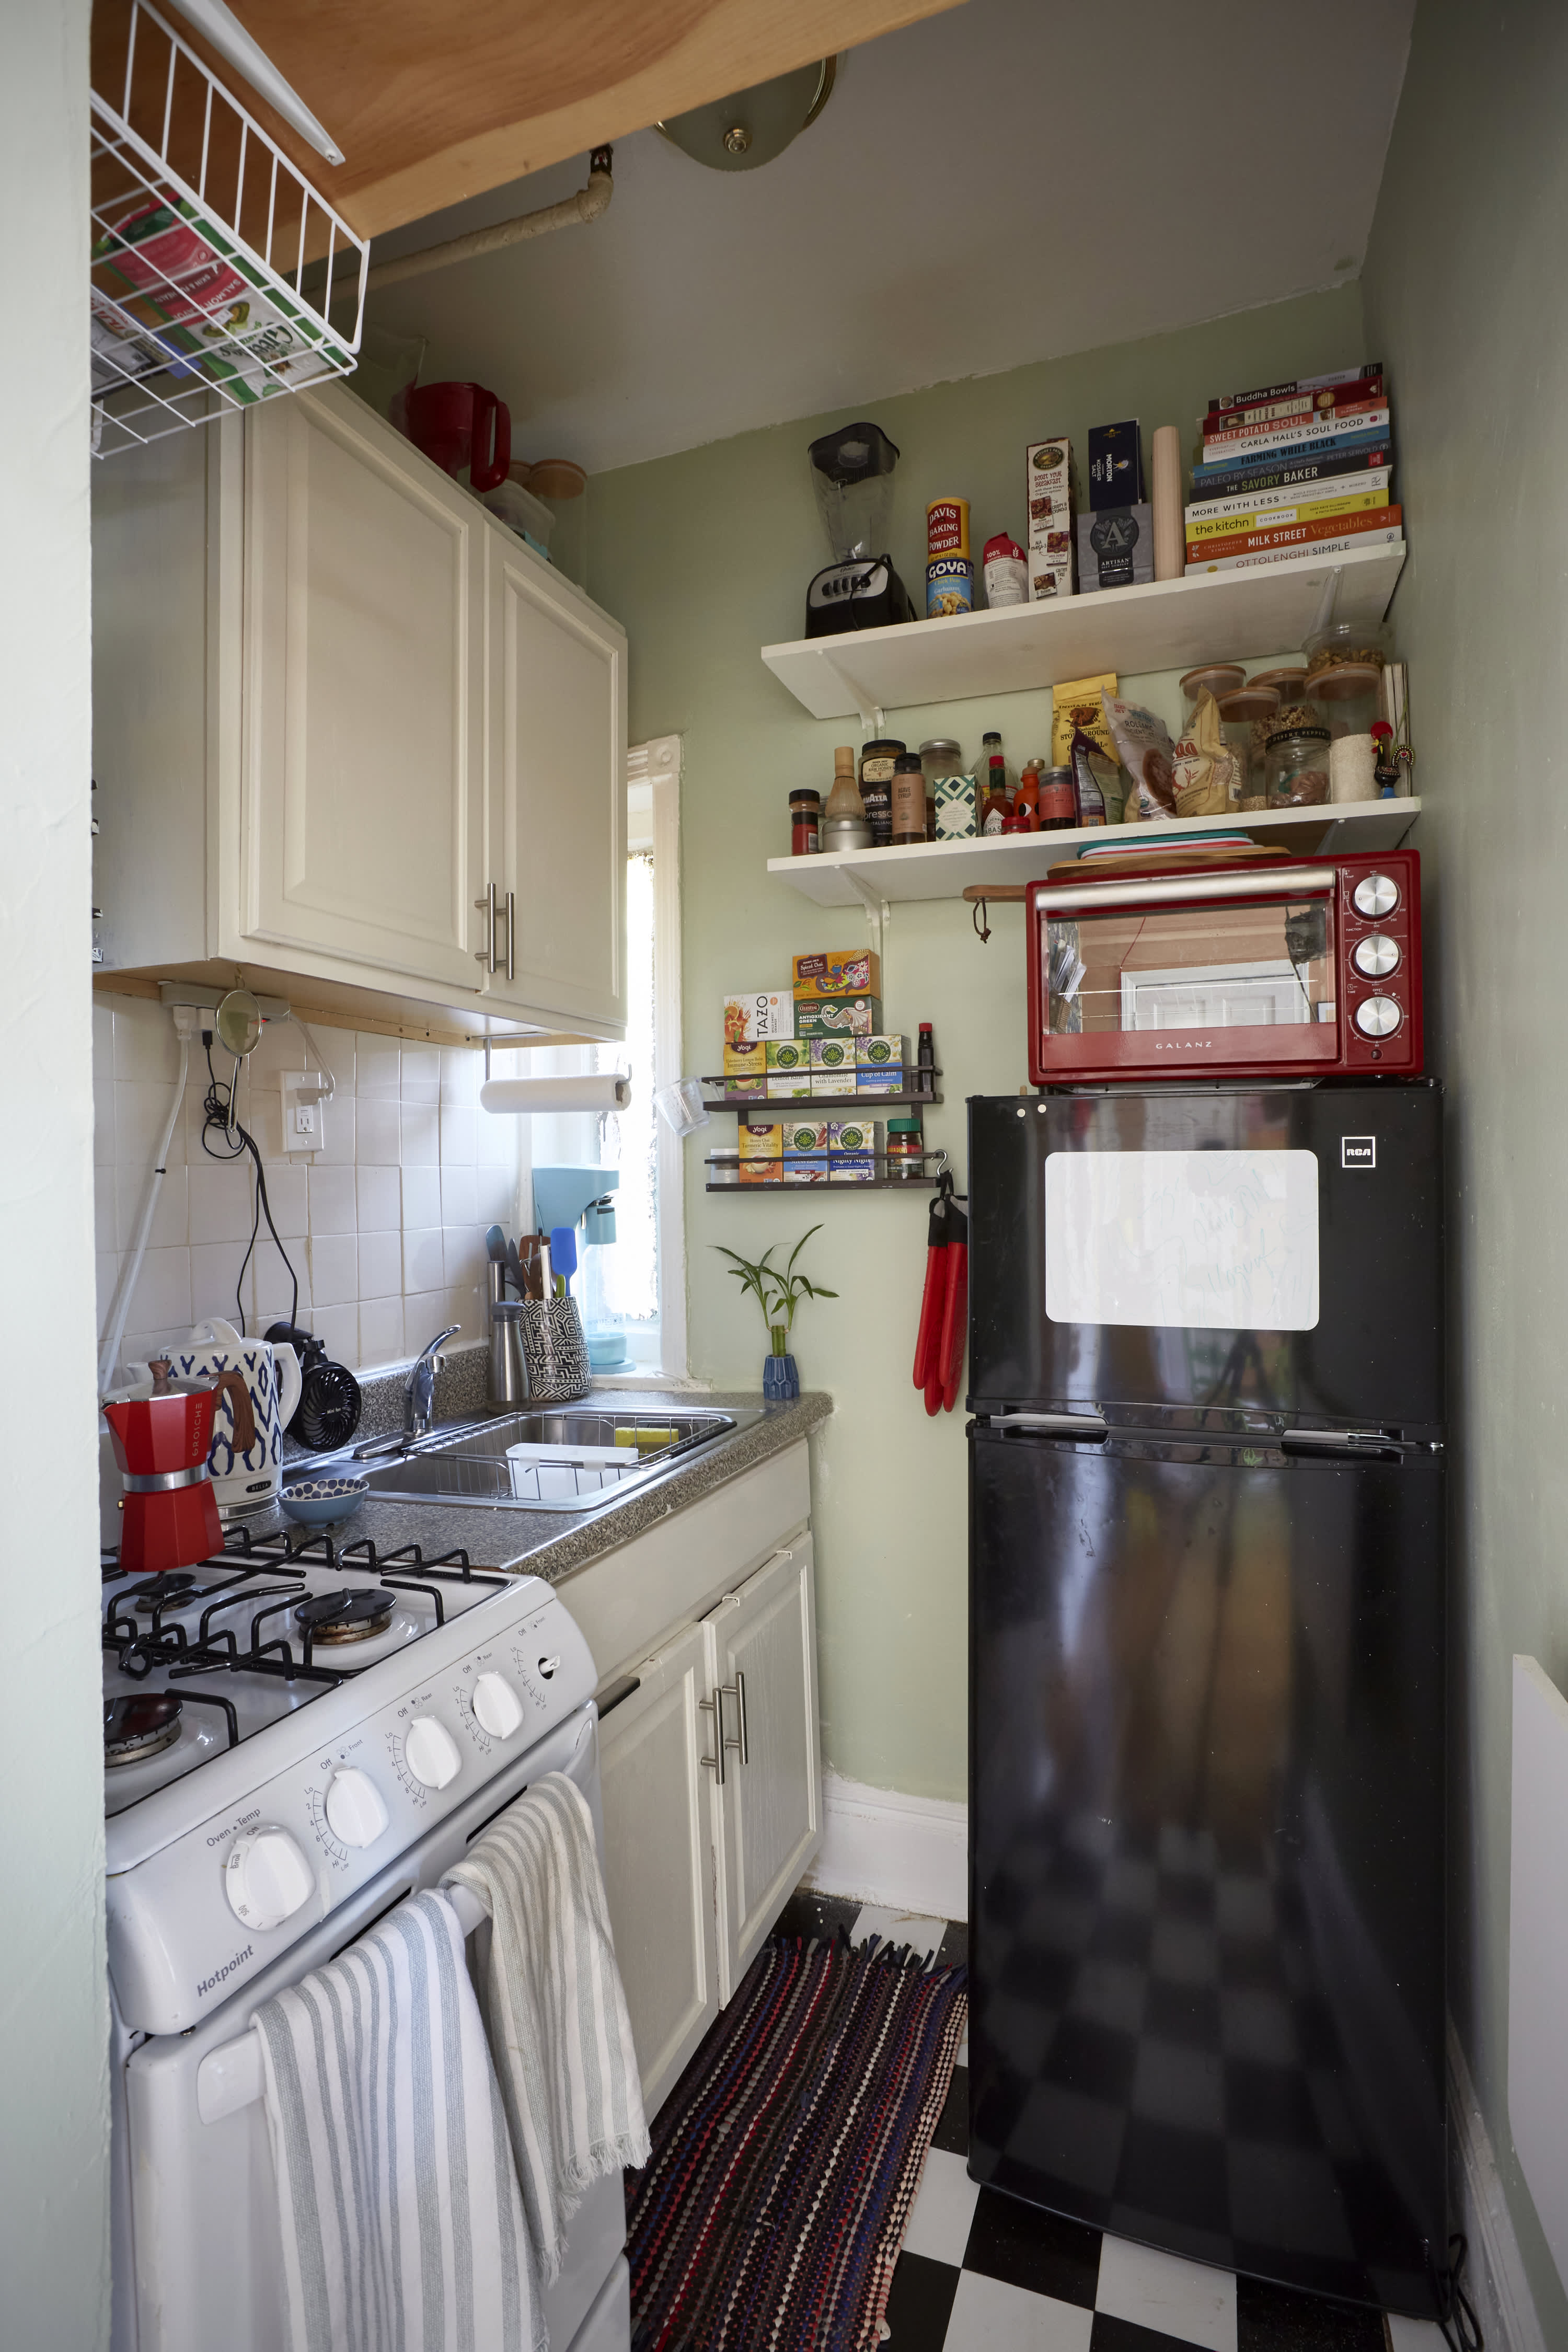 10 apartment kitchen ideas: smart ways to update a studio